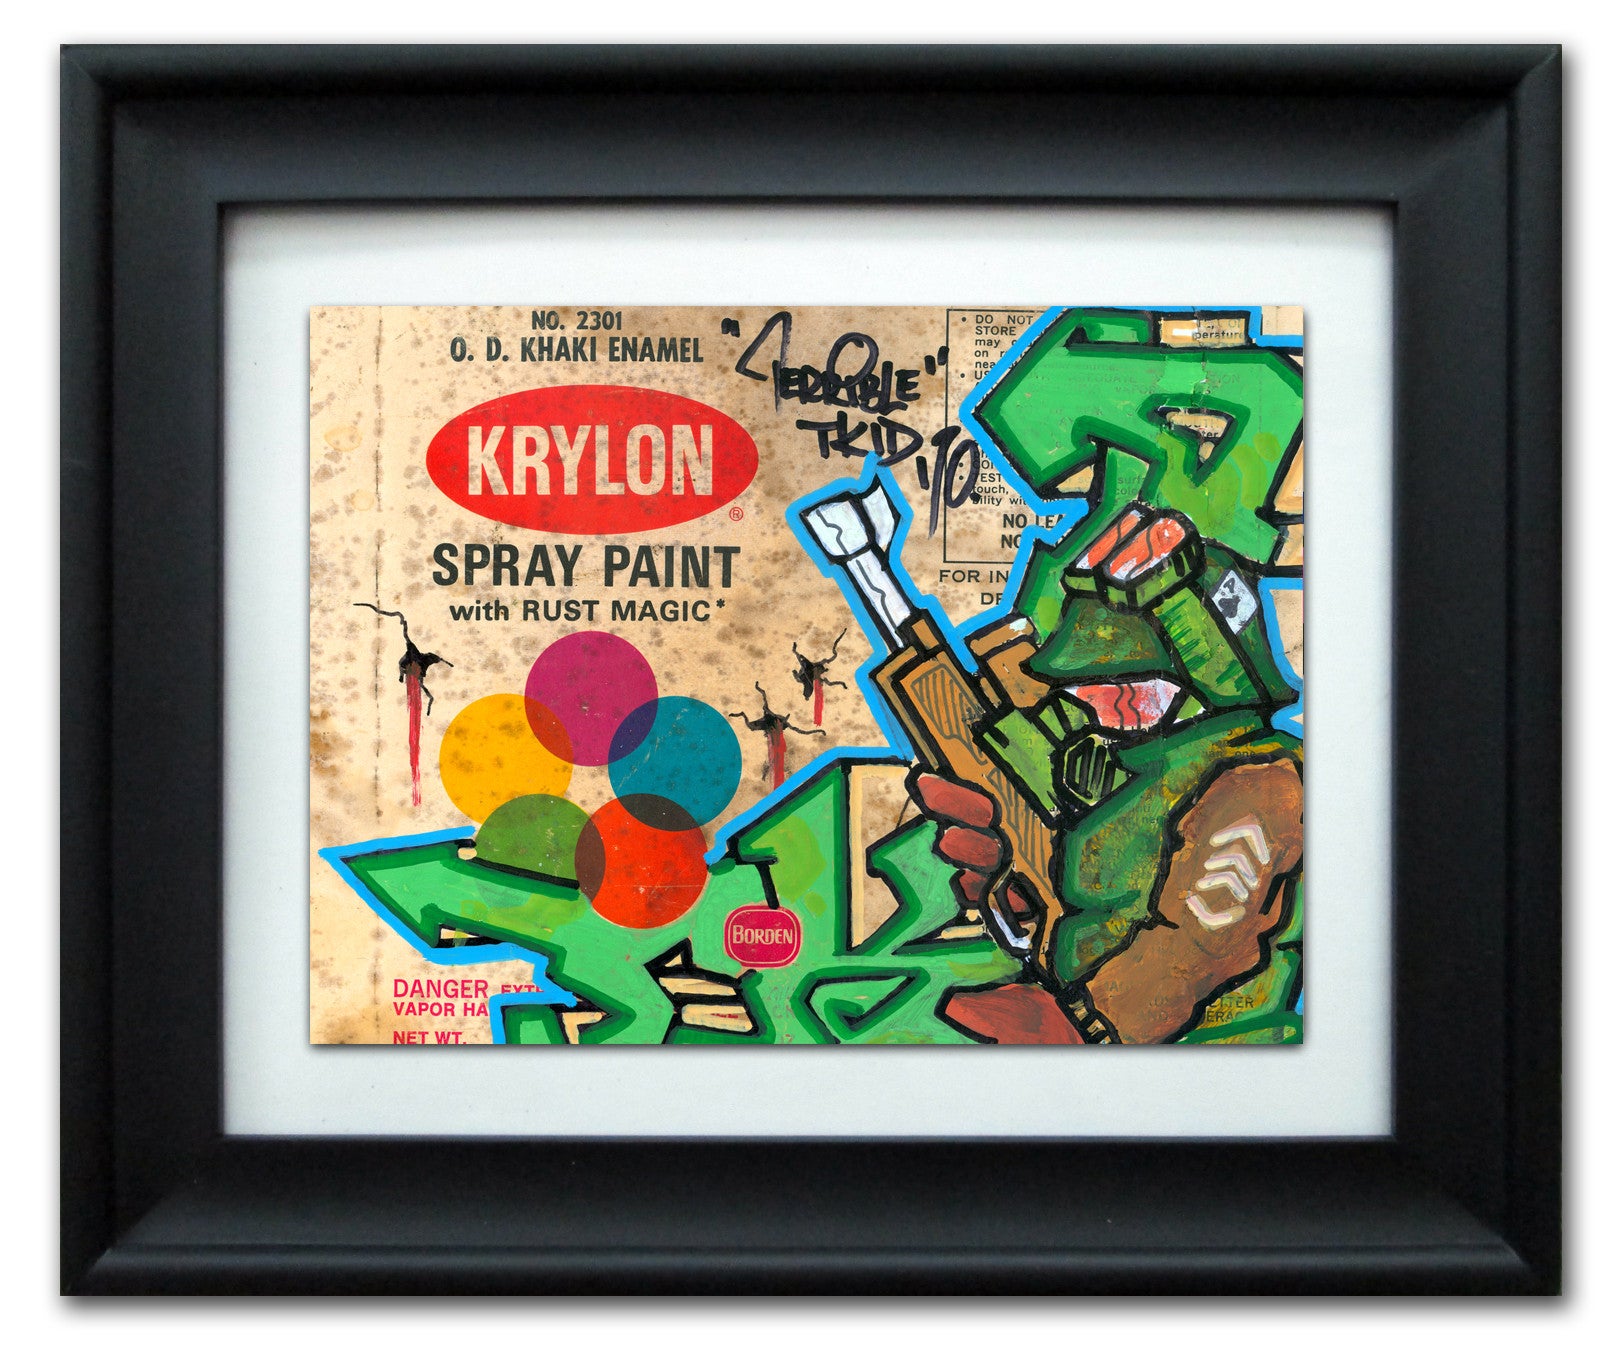 TKID 170- "Krylon" Vintage Label